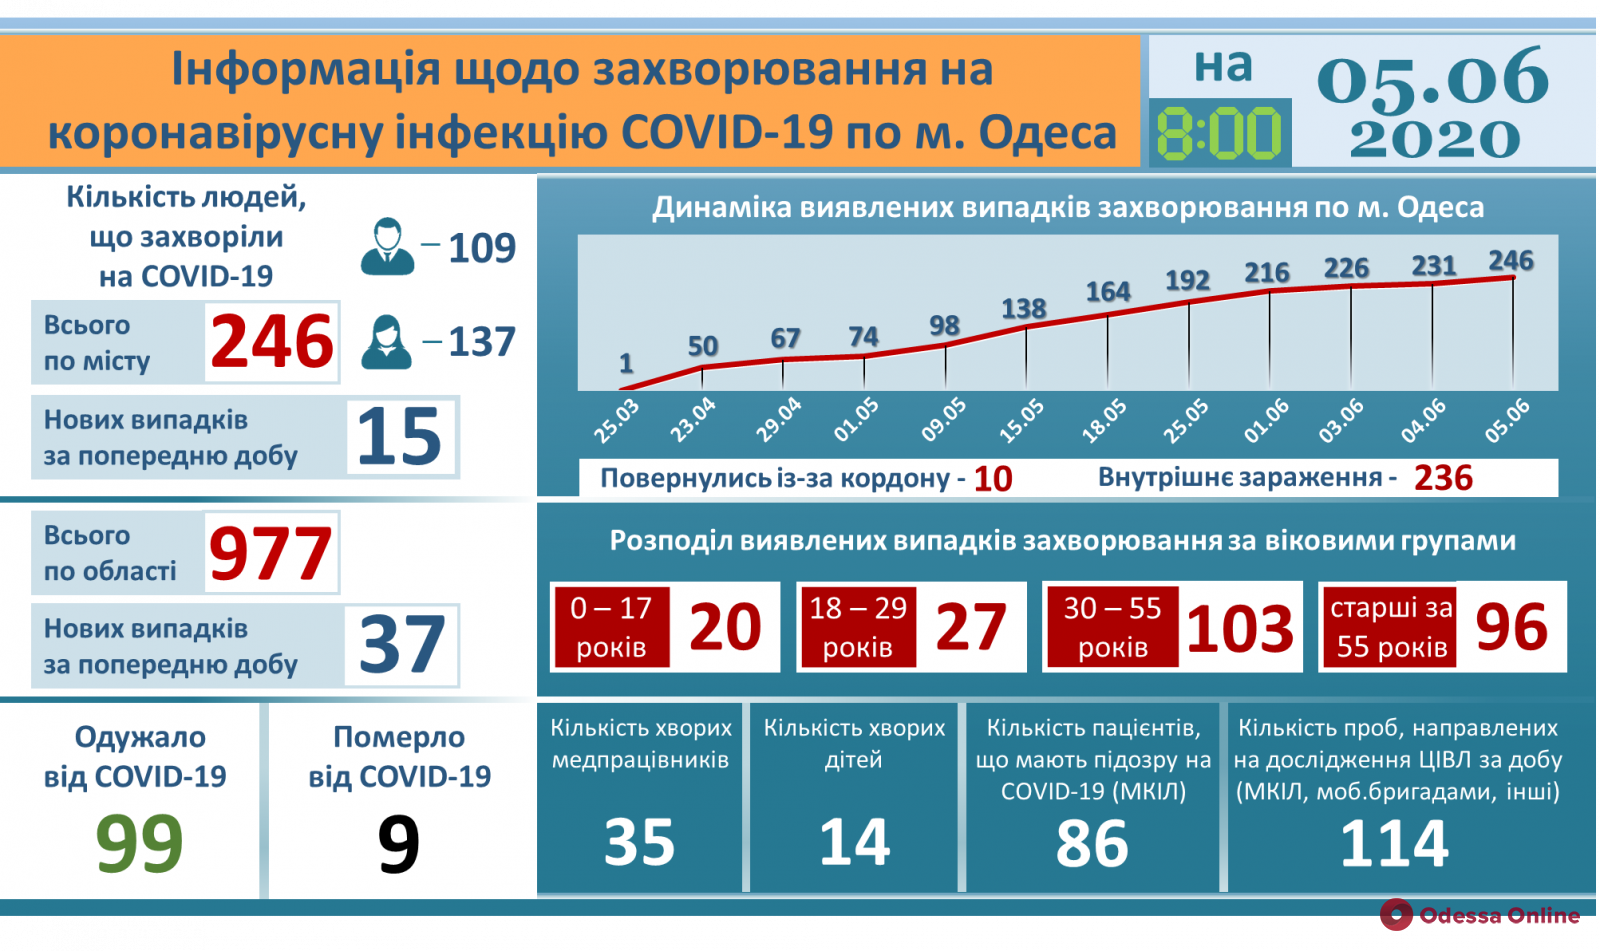 Одесса: от коронавируса выздоровели уже 99 человек